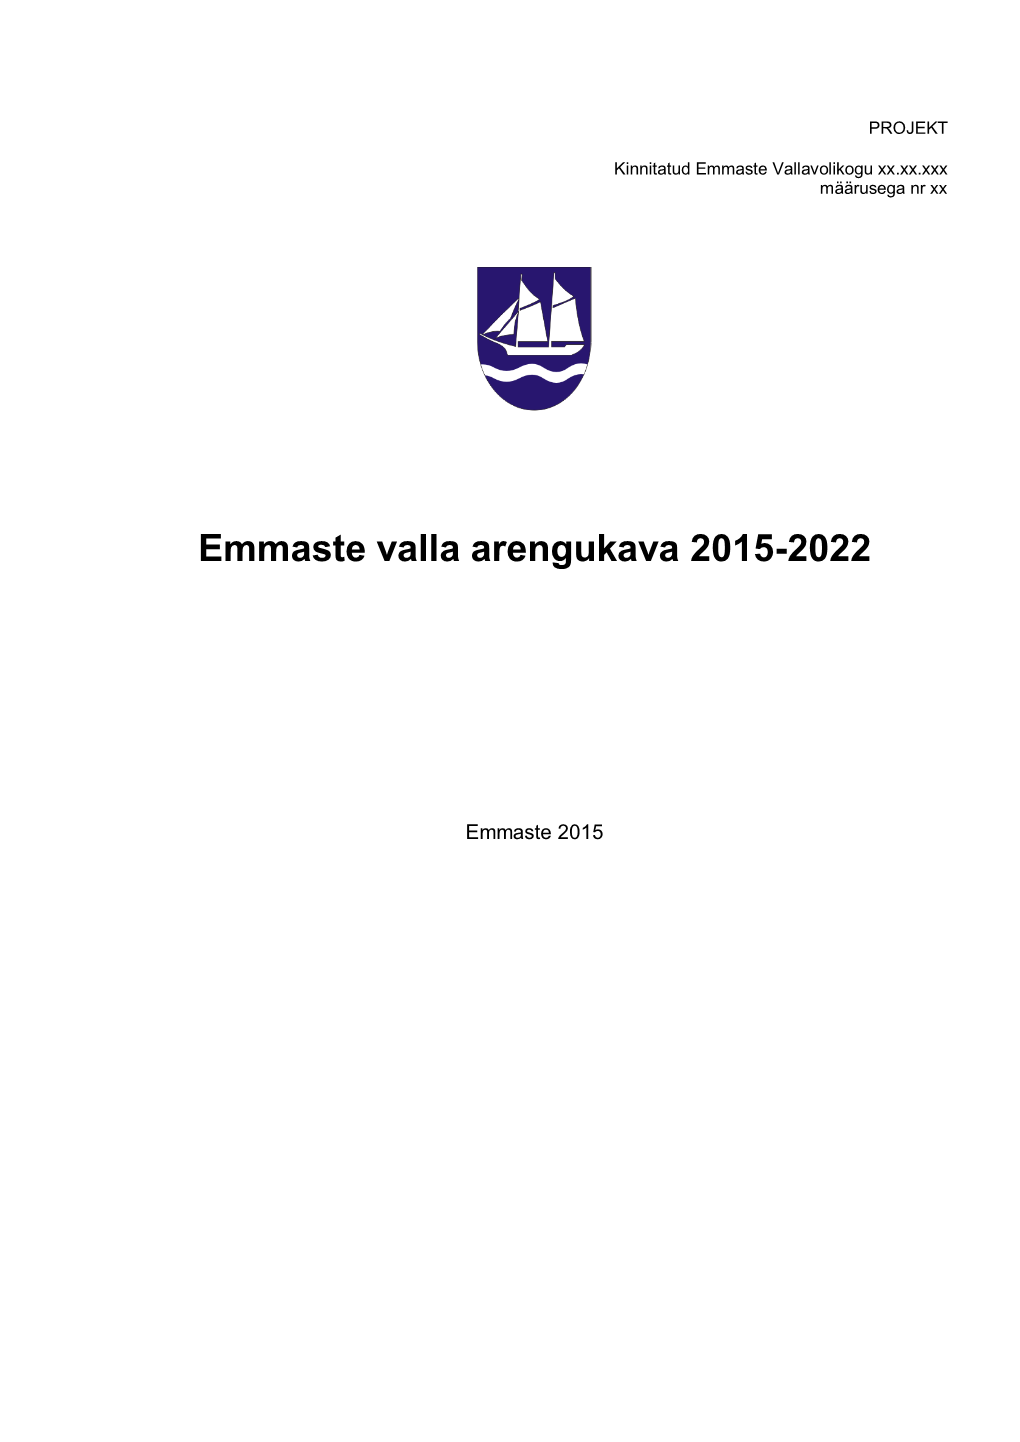 Emmaste Valla Arengukava 2015-2022 Projekt